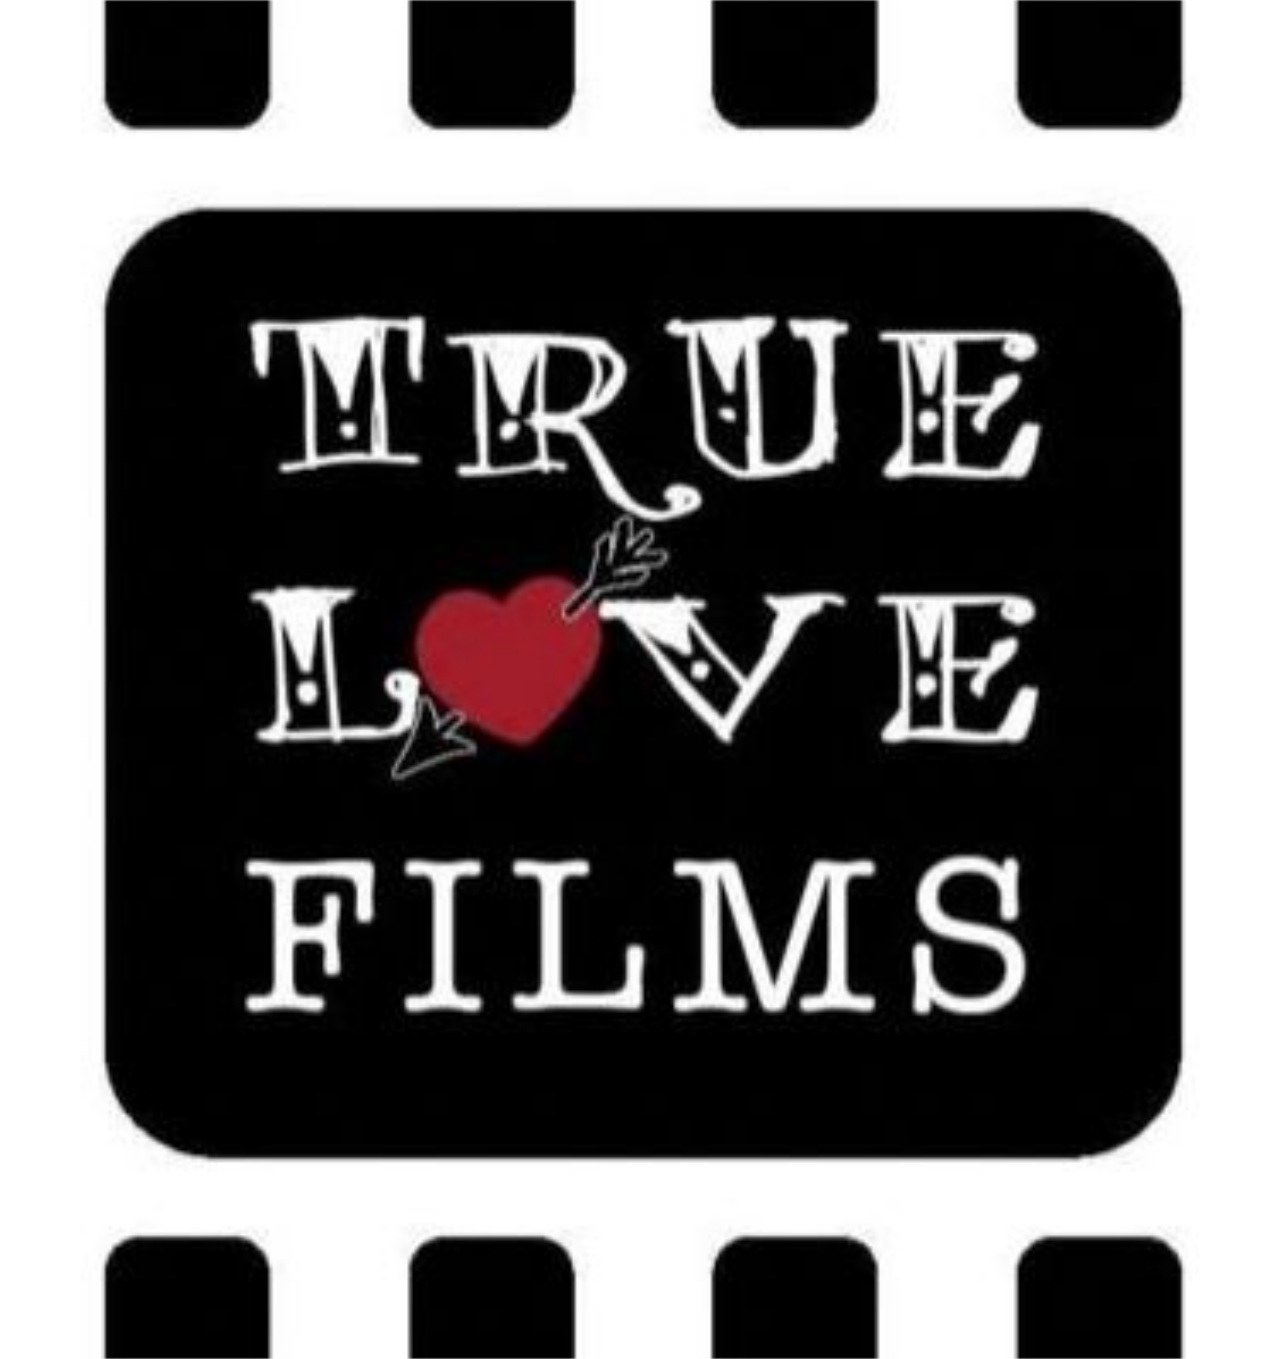 True Love Films's web page